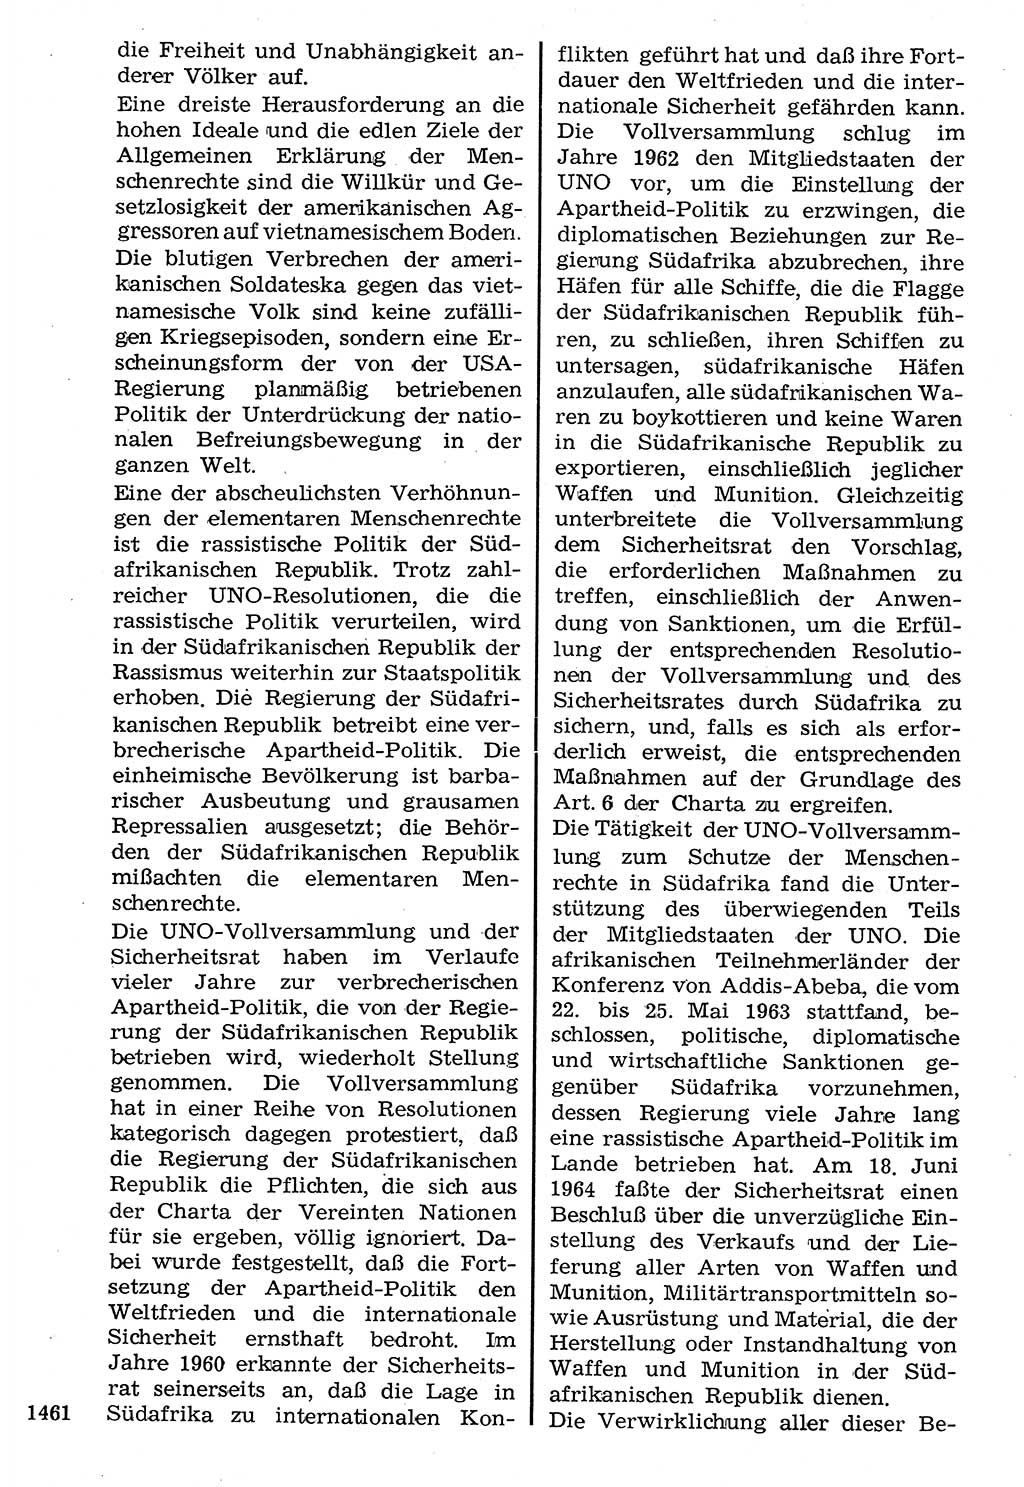 Staat und Recht (StuR), 17. Jahrgang [Deutsche Demokratische Republik (DDR)] 1968, Seite 1461 (StuR DDR 1968, S. 1461)